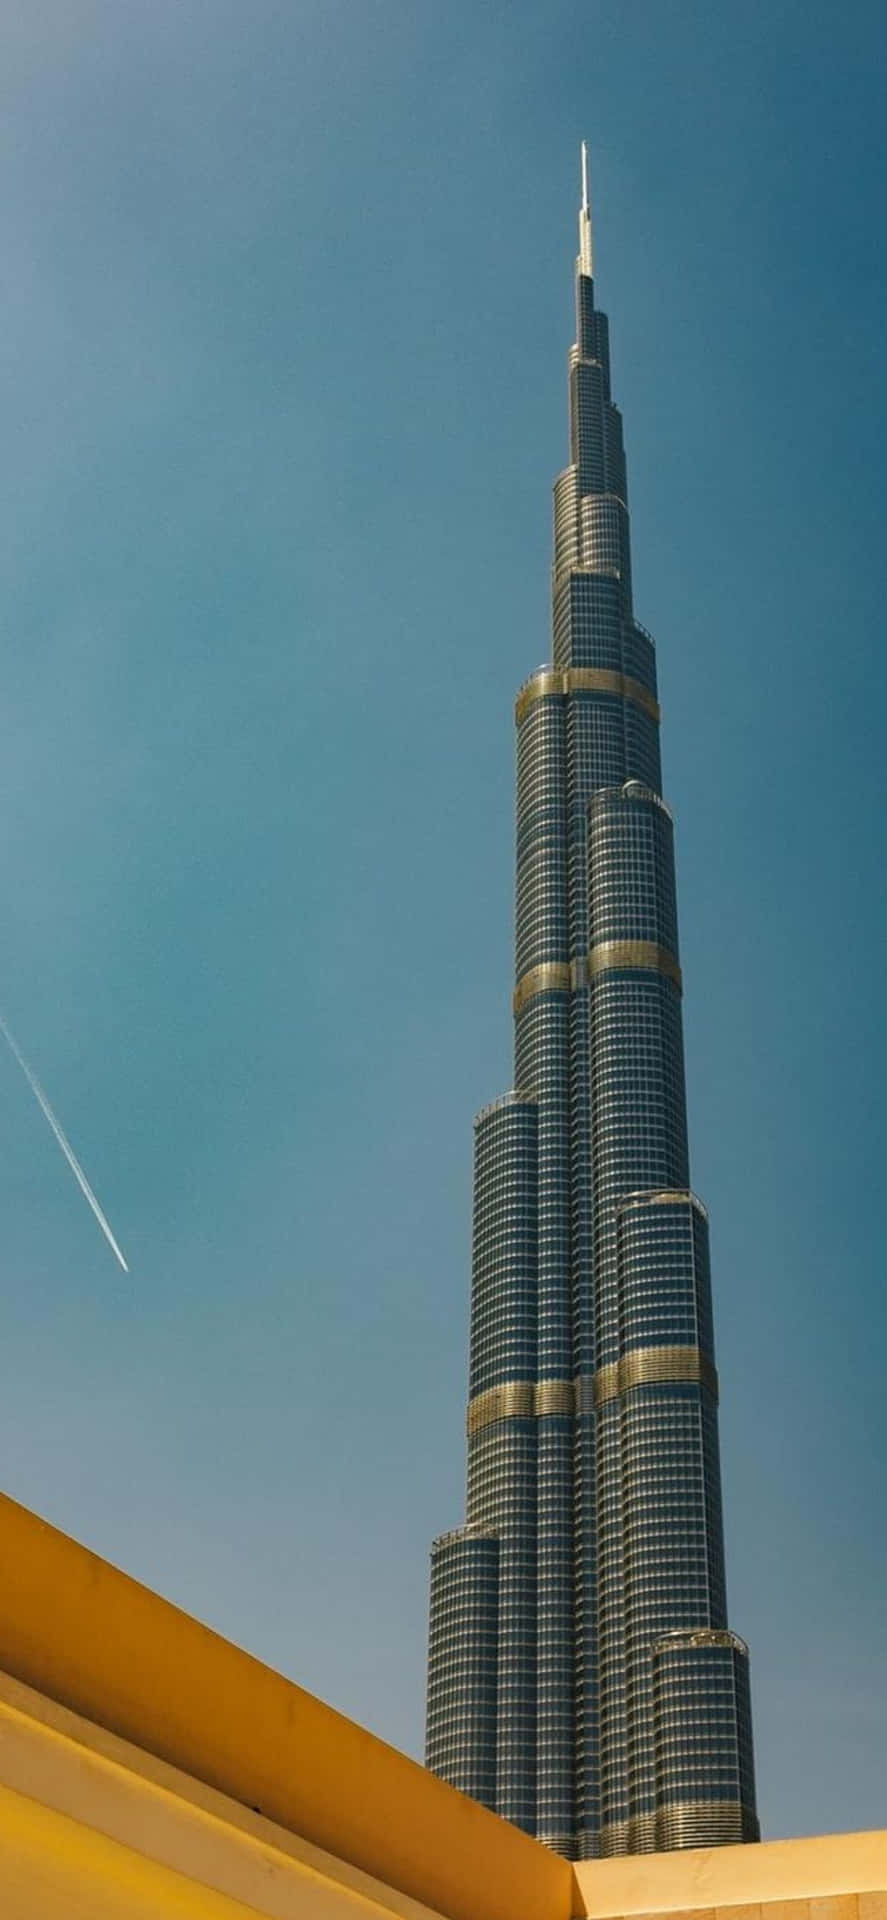 Burjkhalifa-tårnet I Dubai